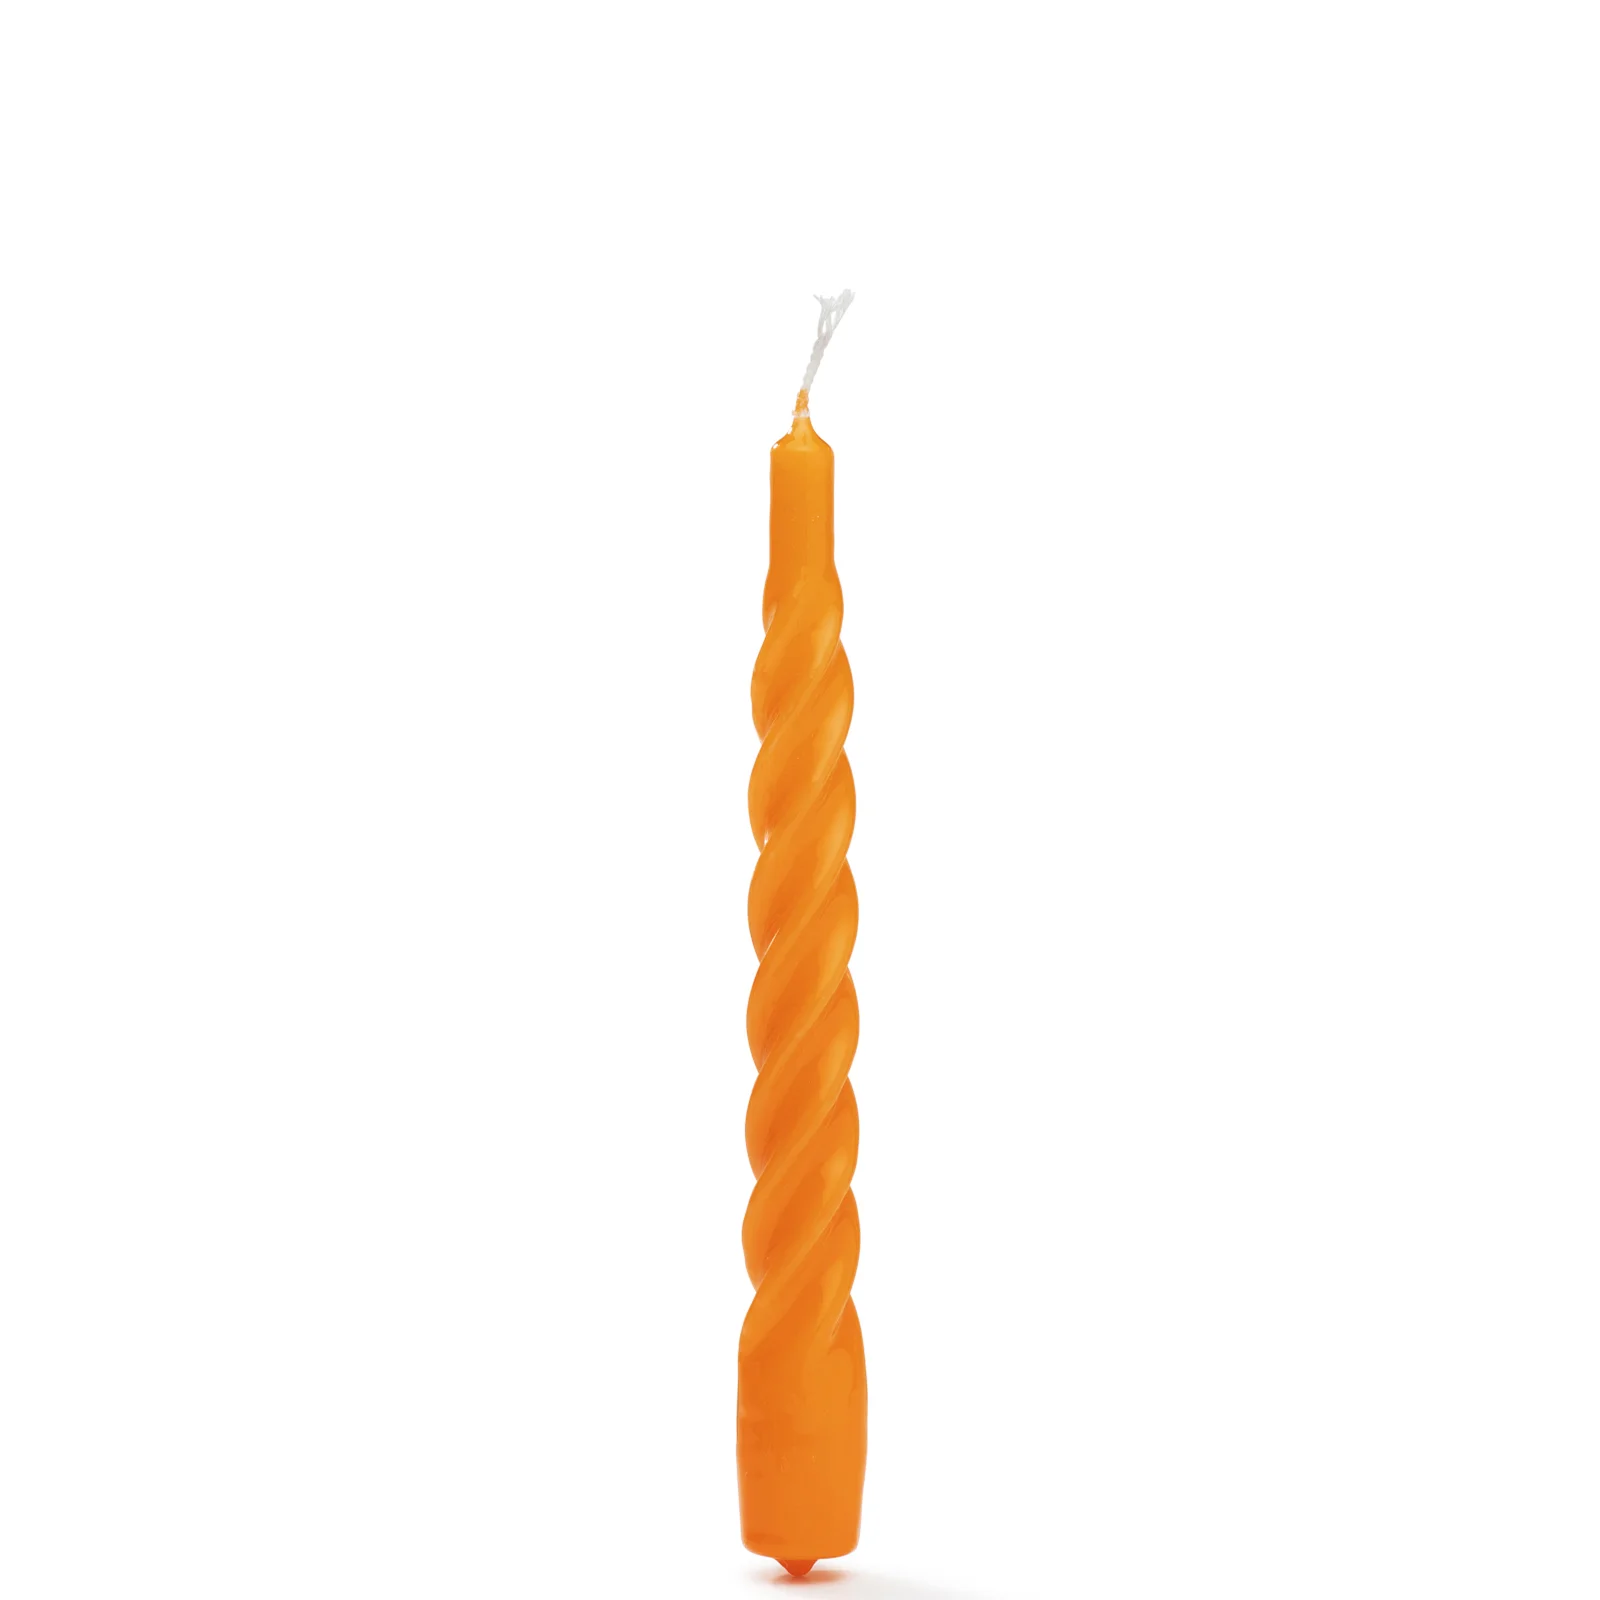 anna + nina Twisted Candle Orange - Set of 6 Image 1